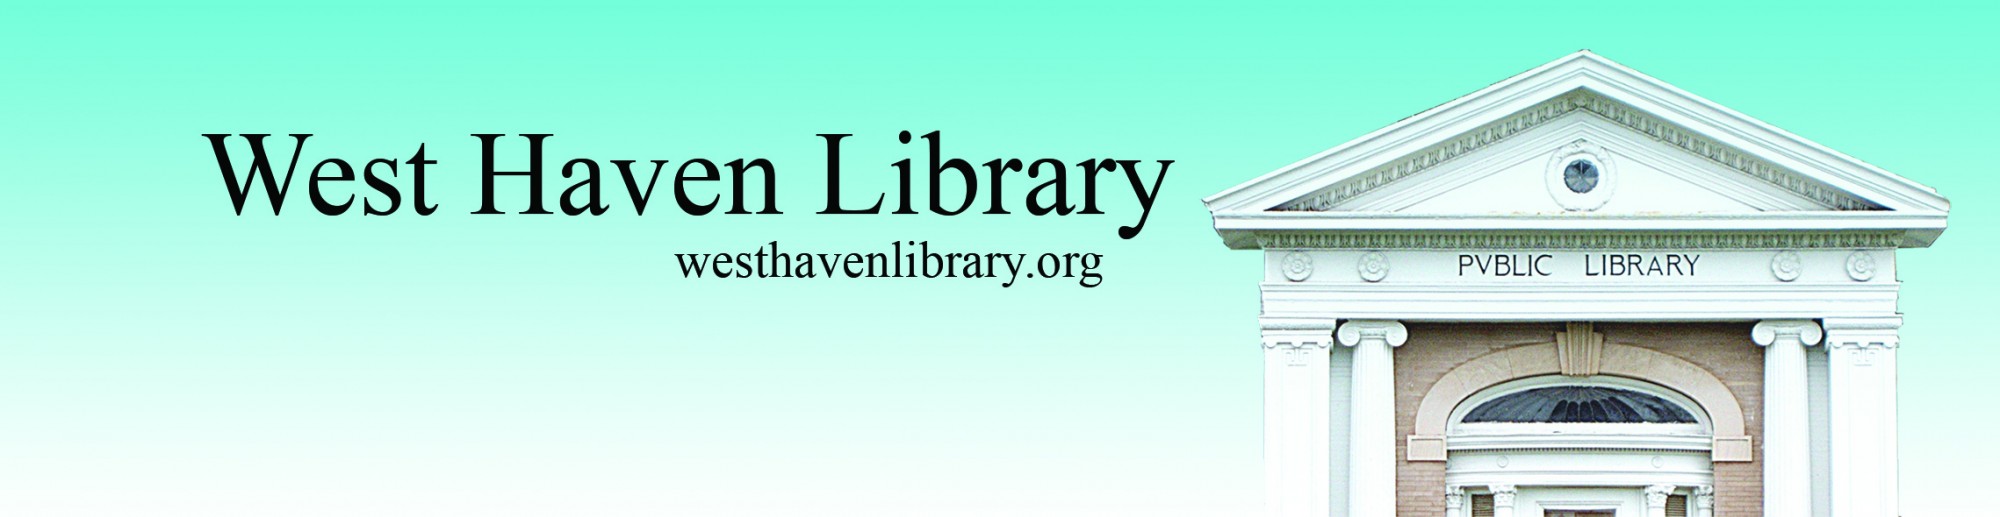 West Haven Public Library